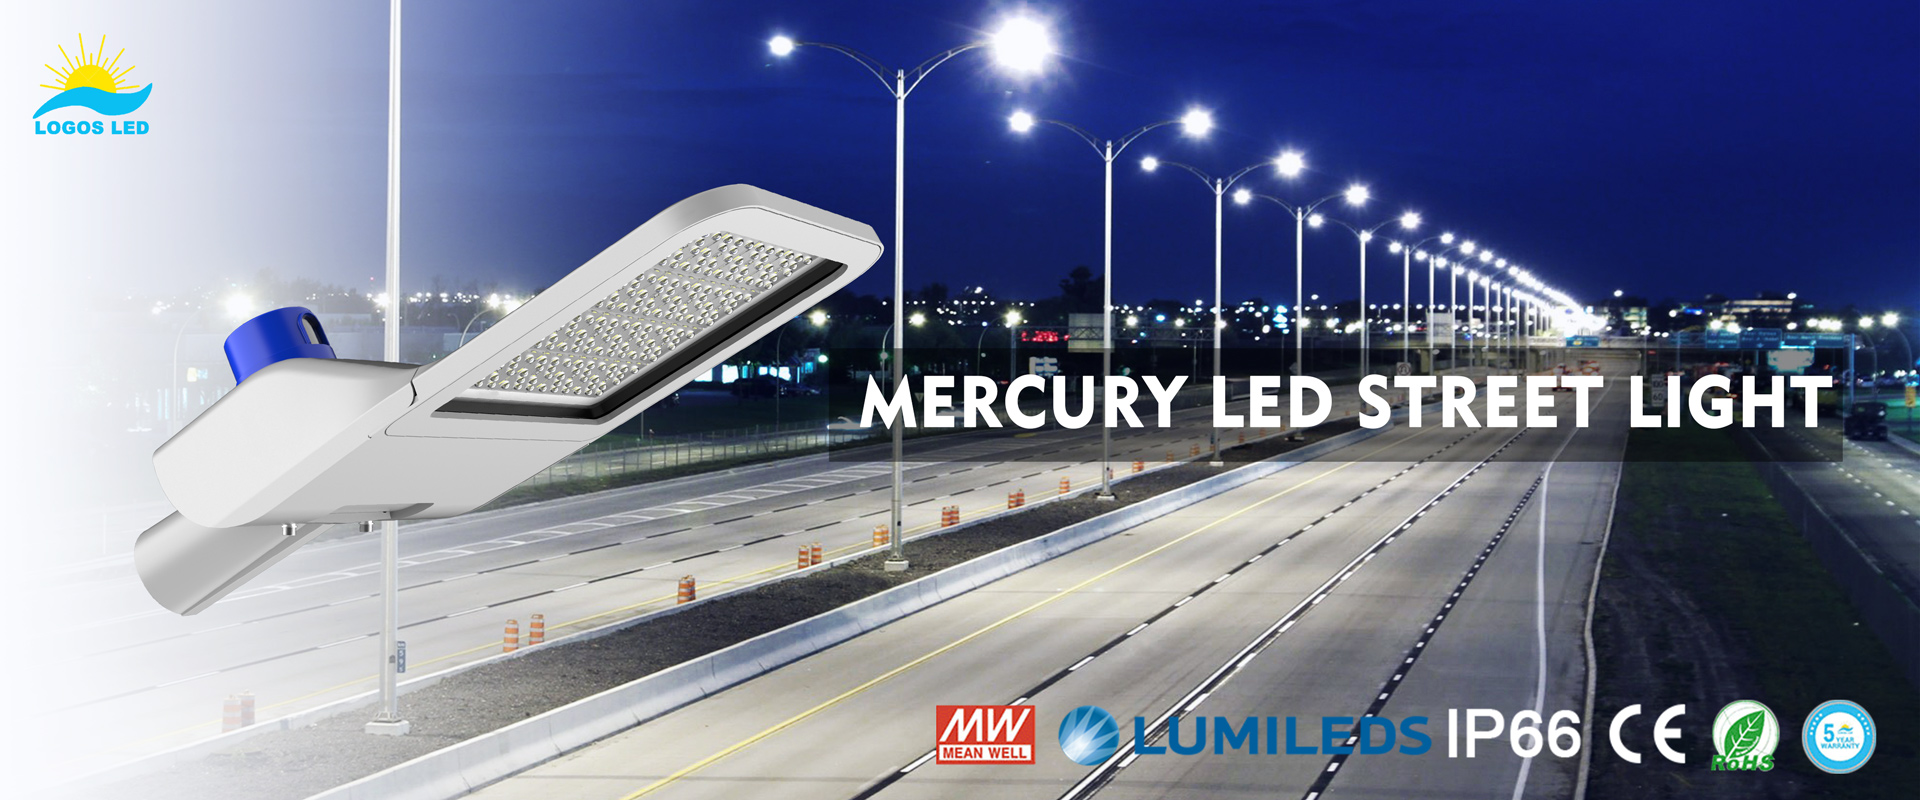 Mercury LED Street Light